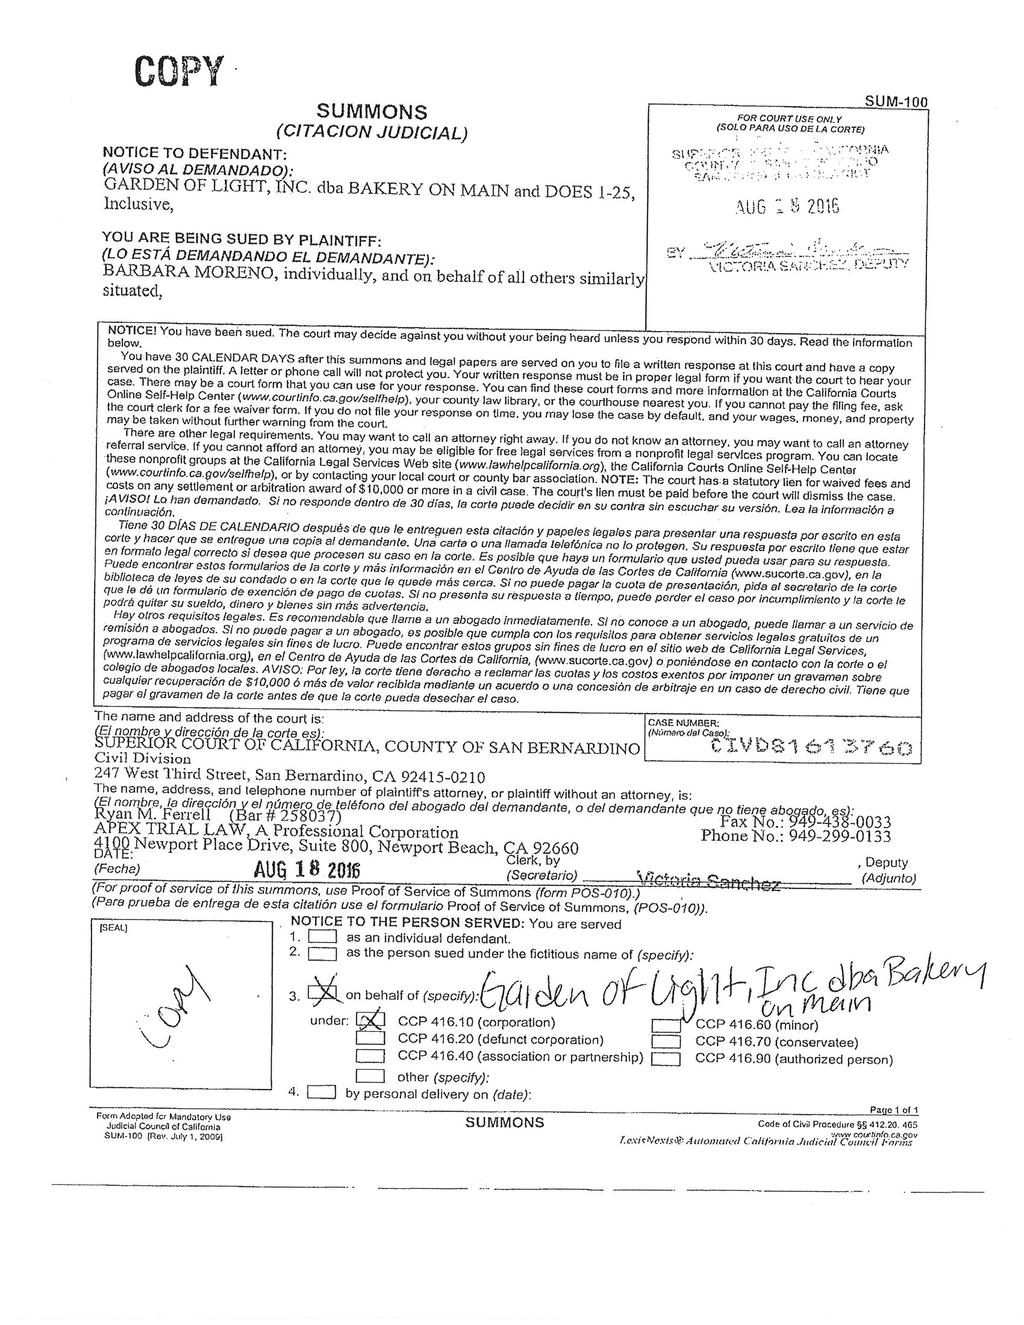 Case 5:16-cv-02160-GW-DTB Document 1-1